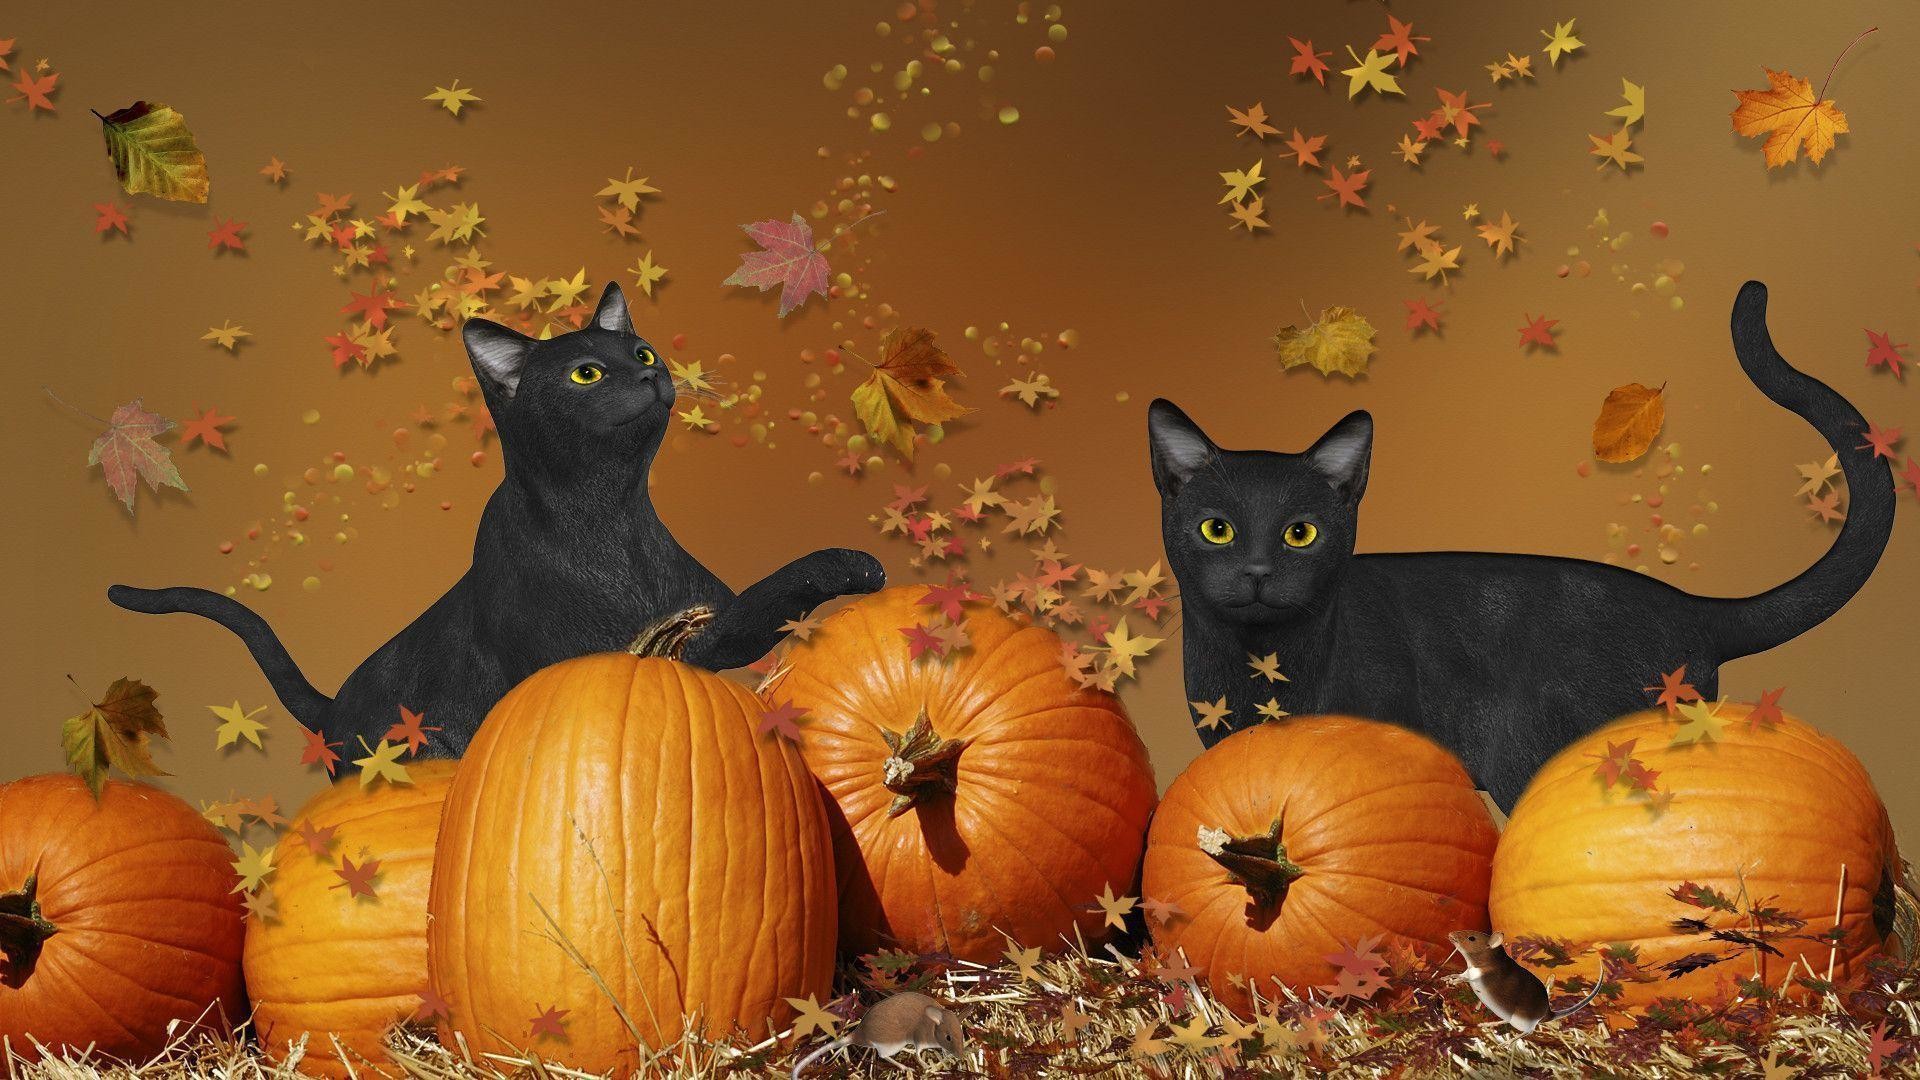 Black Cat Halloween Wallpaper Image